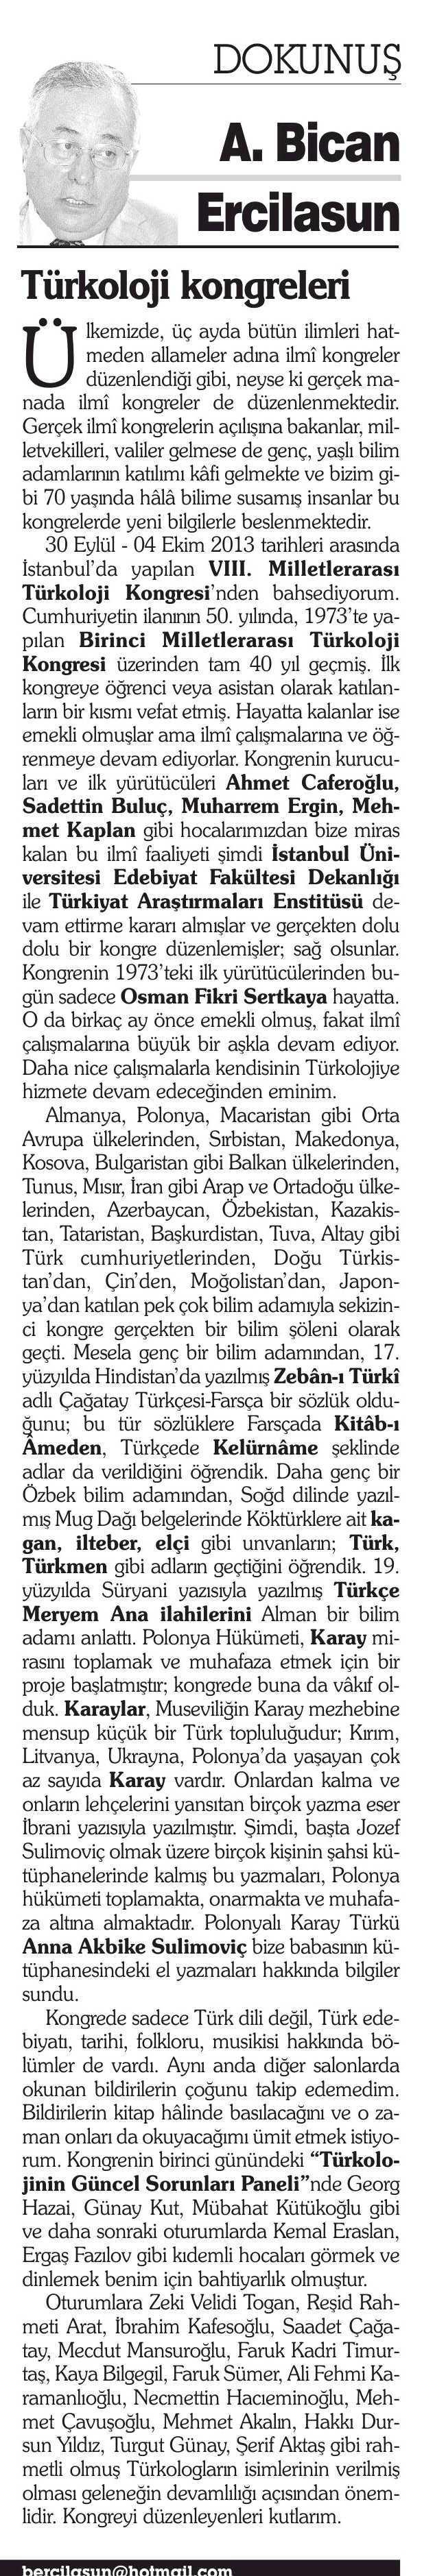 TÜRKOLOJI KONGRELERI Yayın Adı : Türkiye' de Yeniçag Sayfa : 9